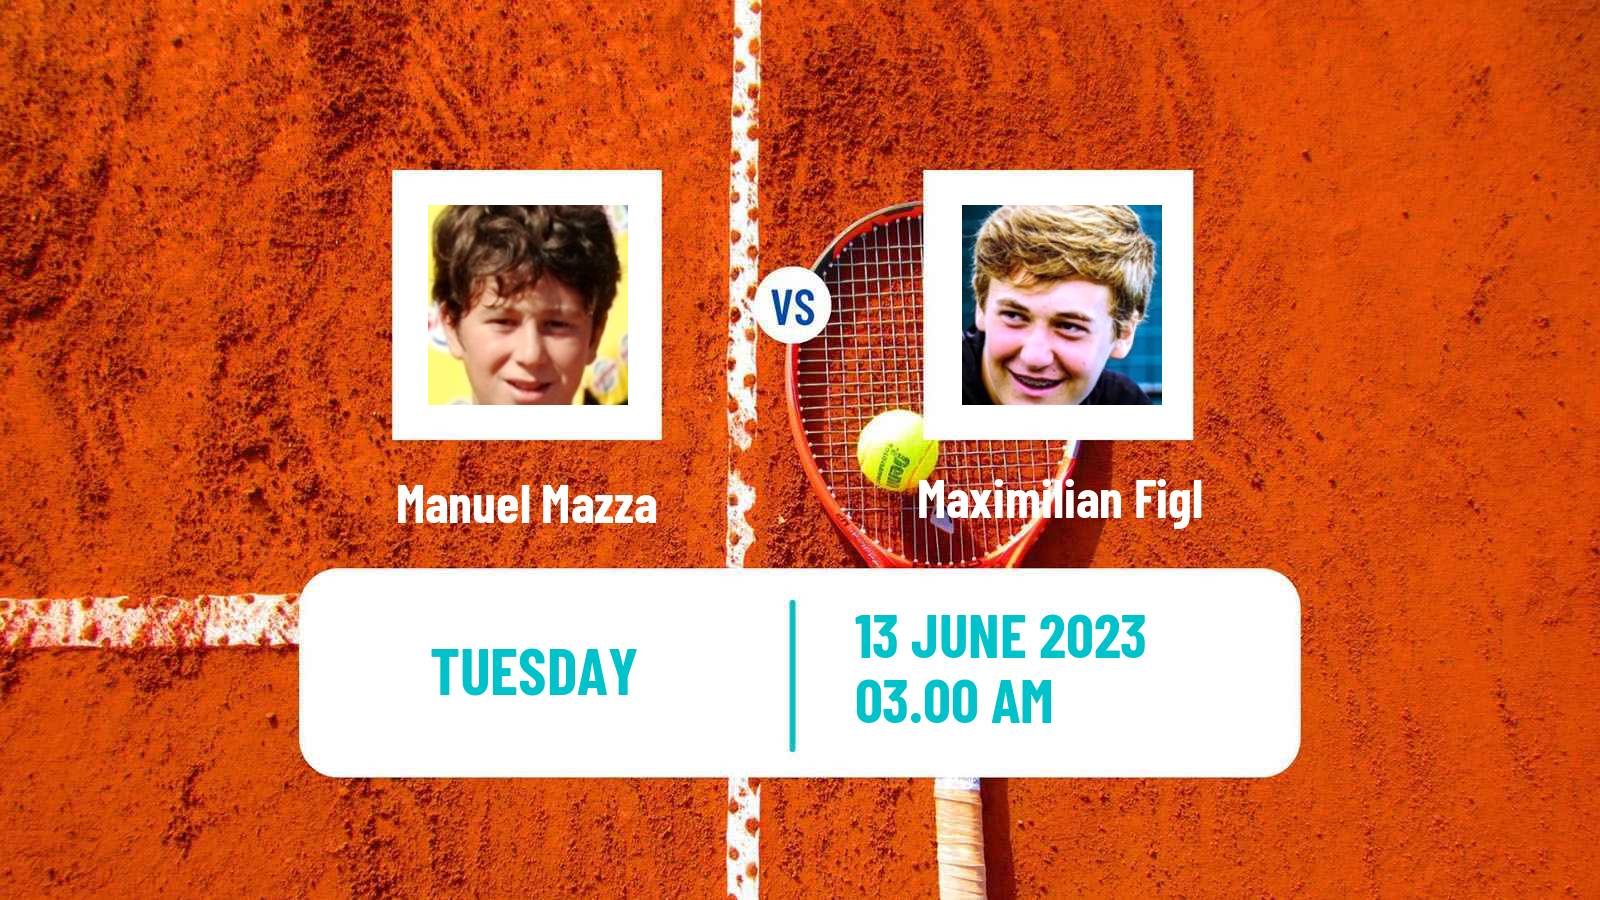 Tennis ITF M15 Chieti Men Manuel Mazza - Maximilian Figl